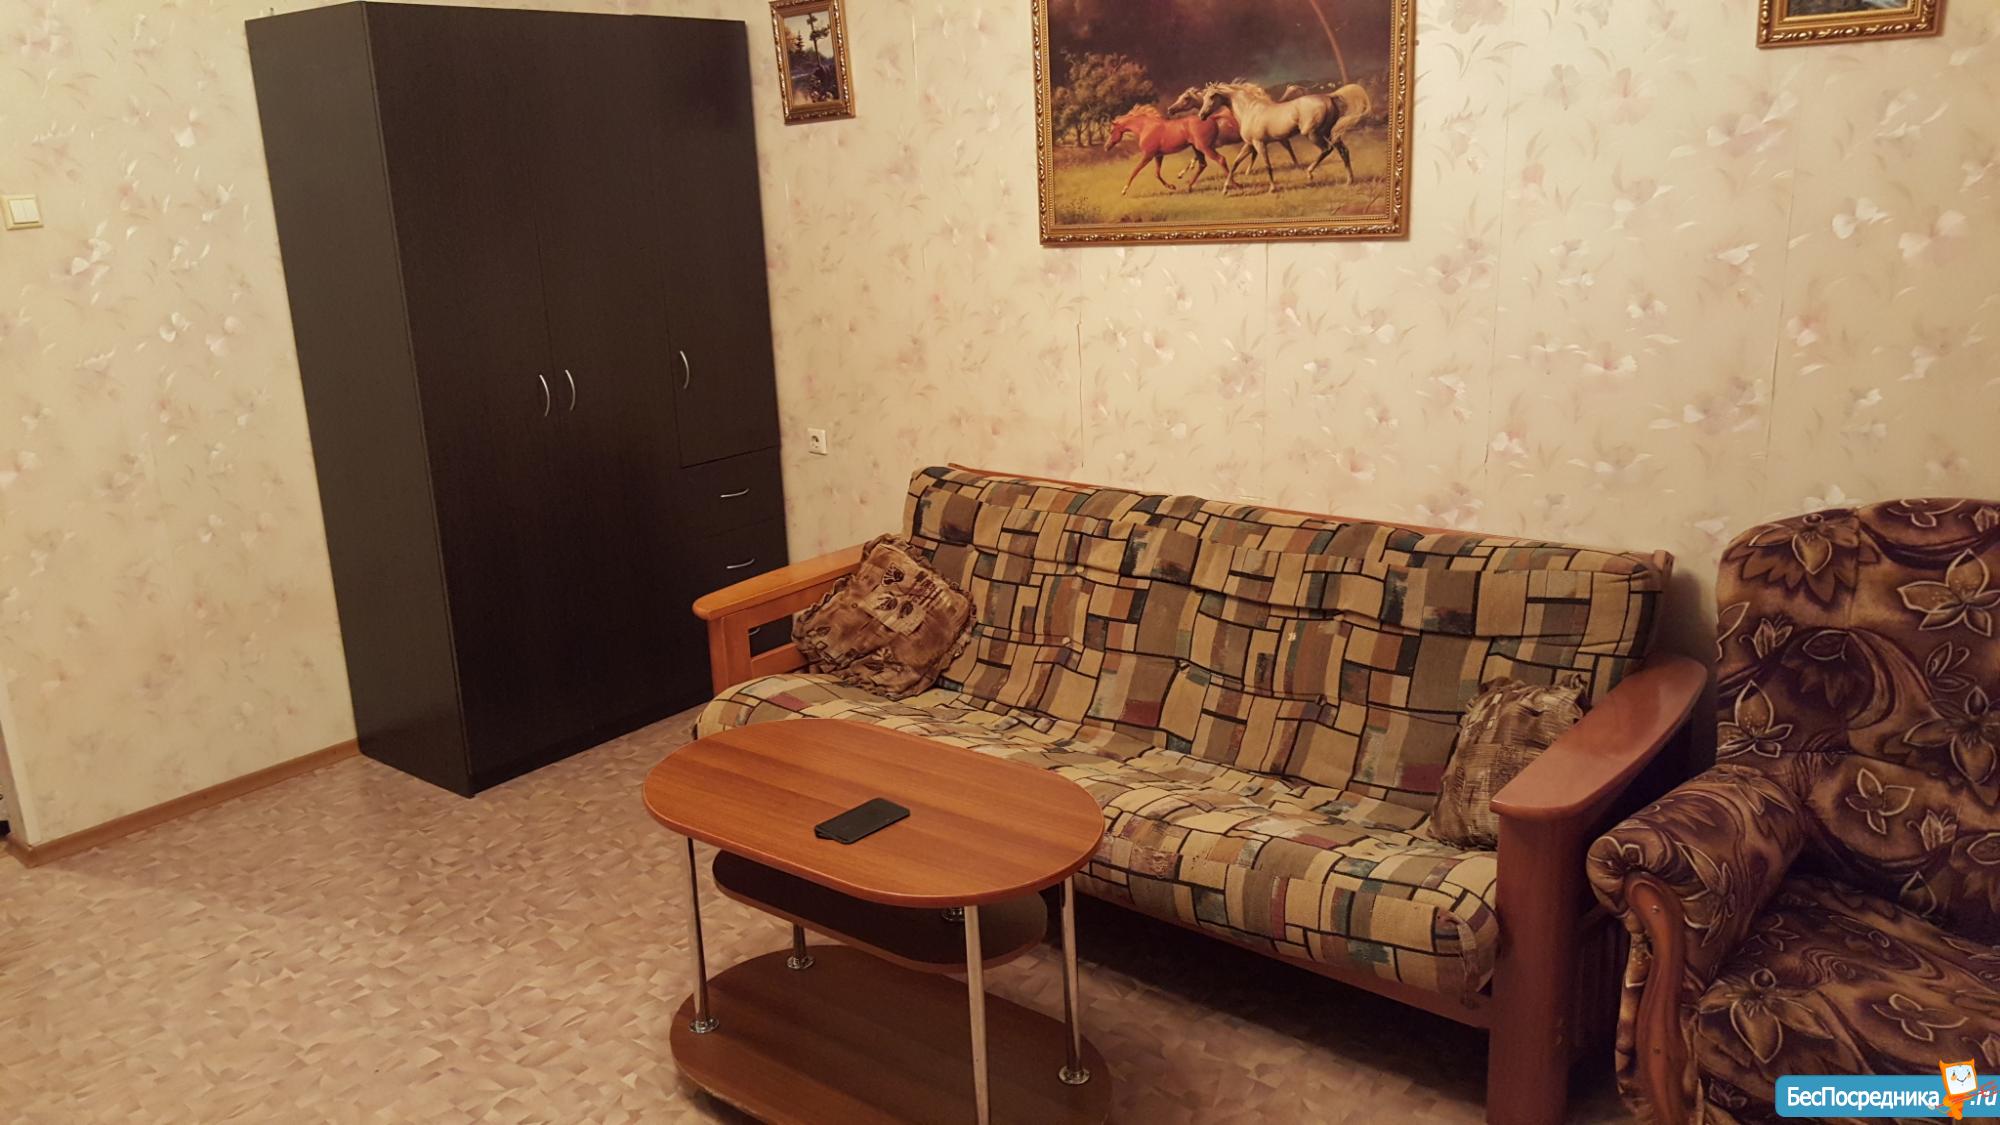 Сниму квартиру в Улан-Удэ без посредников на длительный срок